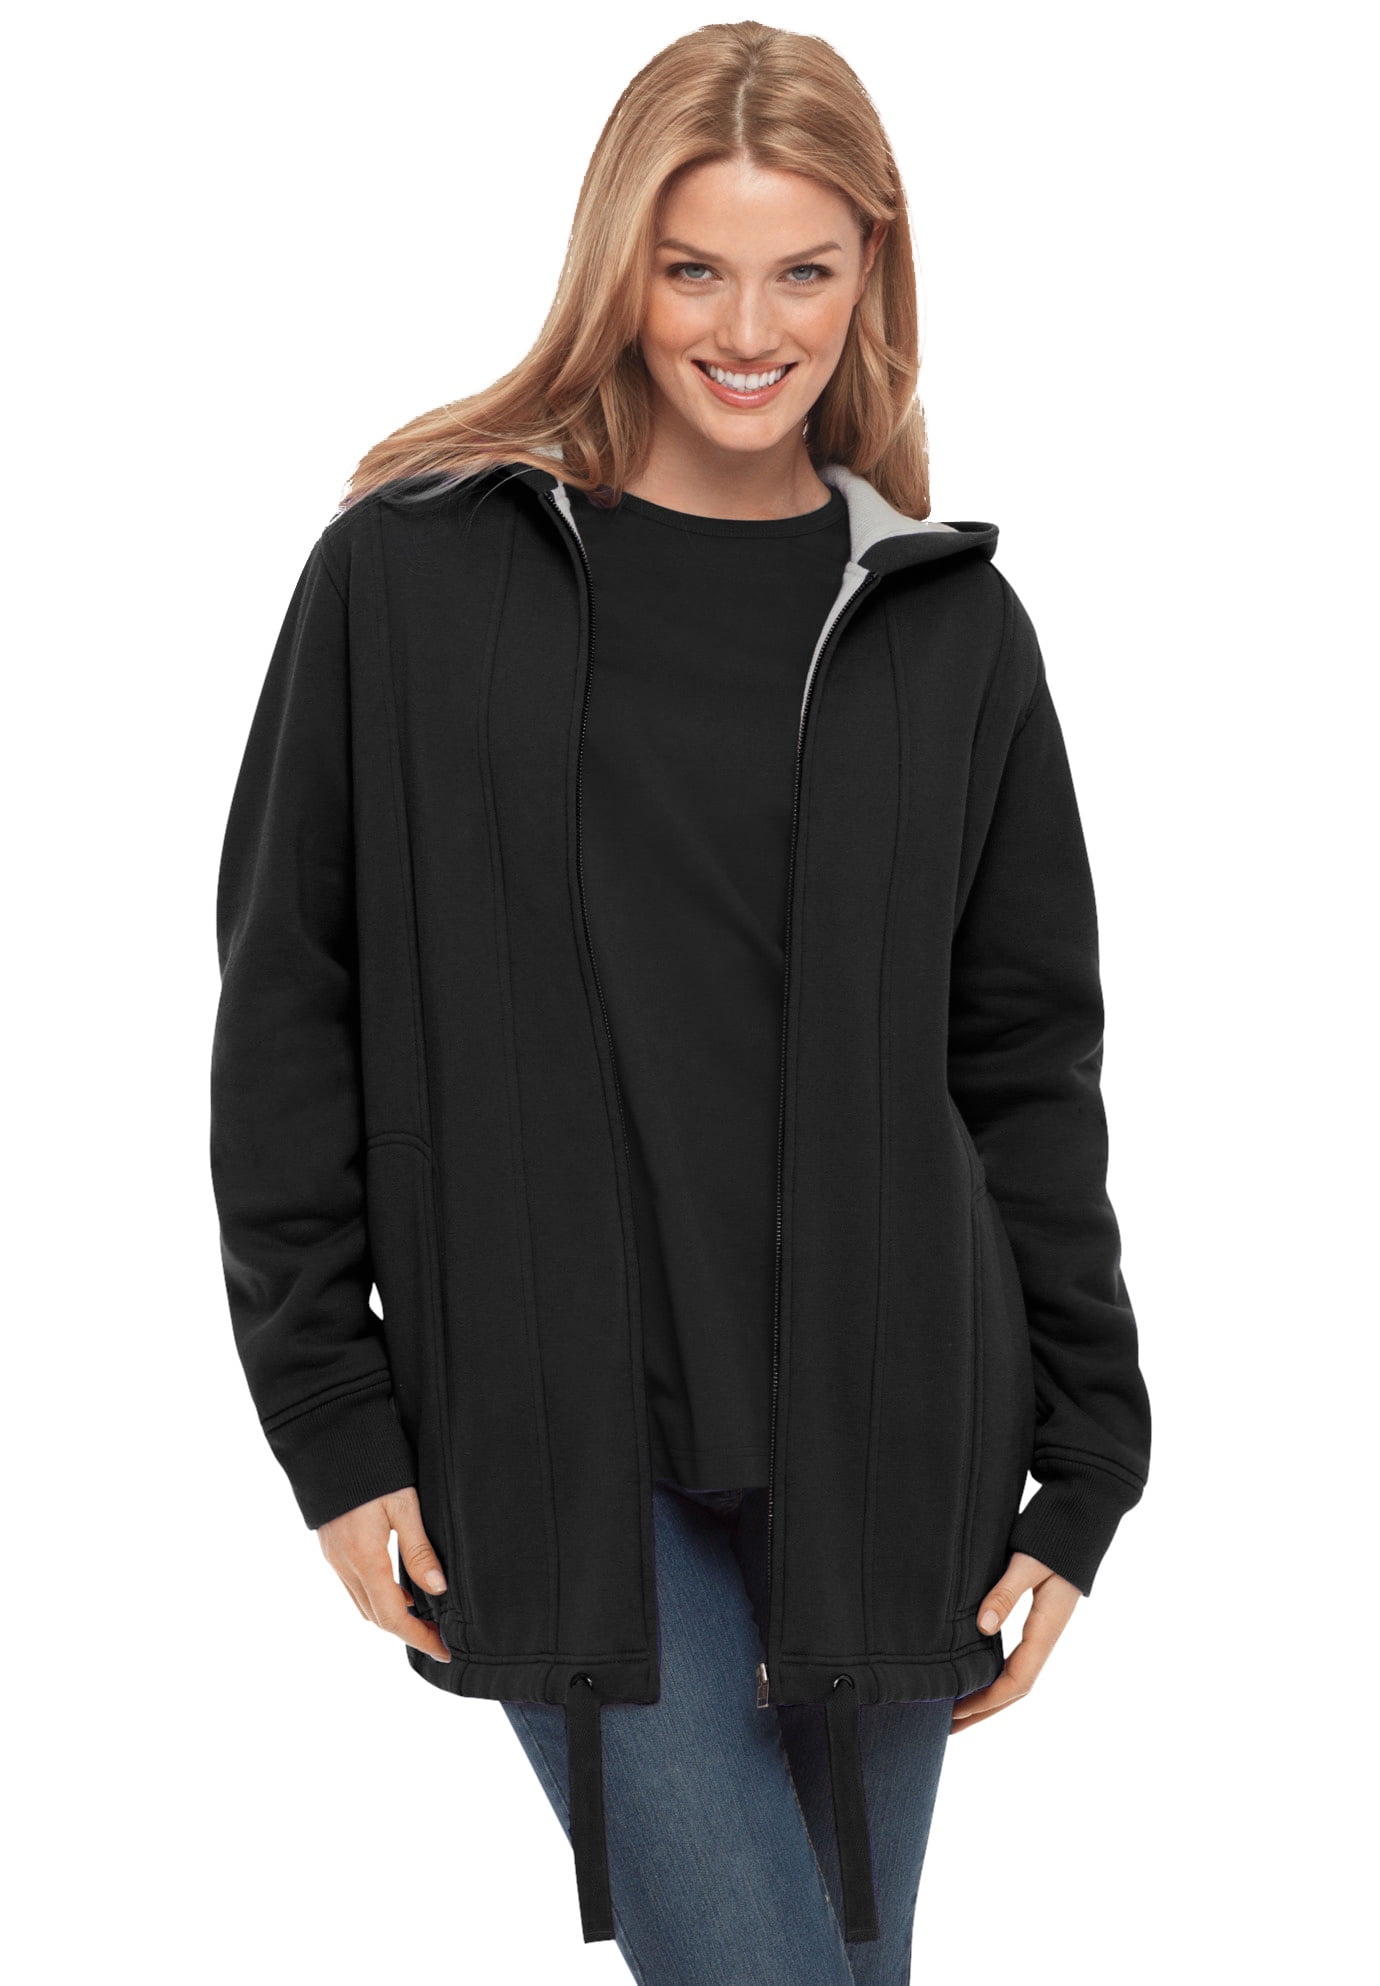 Women Fleece Coat Butterfly Print Zip Up Hooded Winter Warm Sherpa Lined Jacket Long Sleeve Plus Size Sweatshirt with Pocket